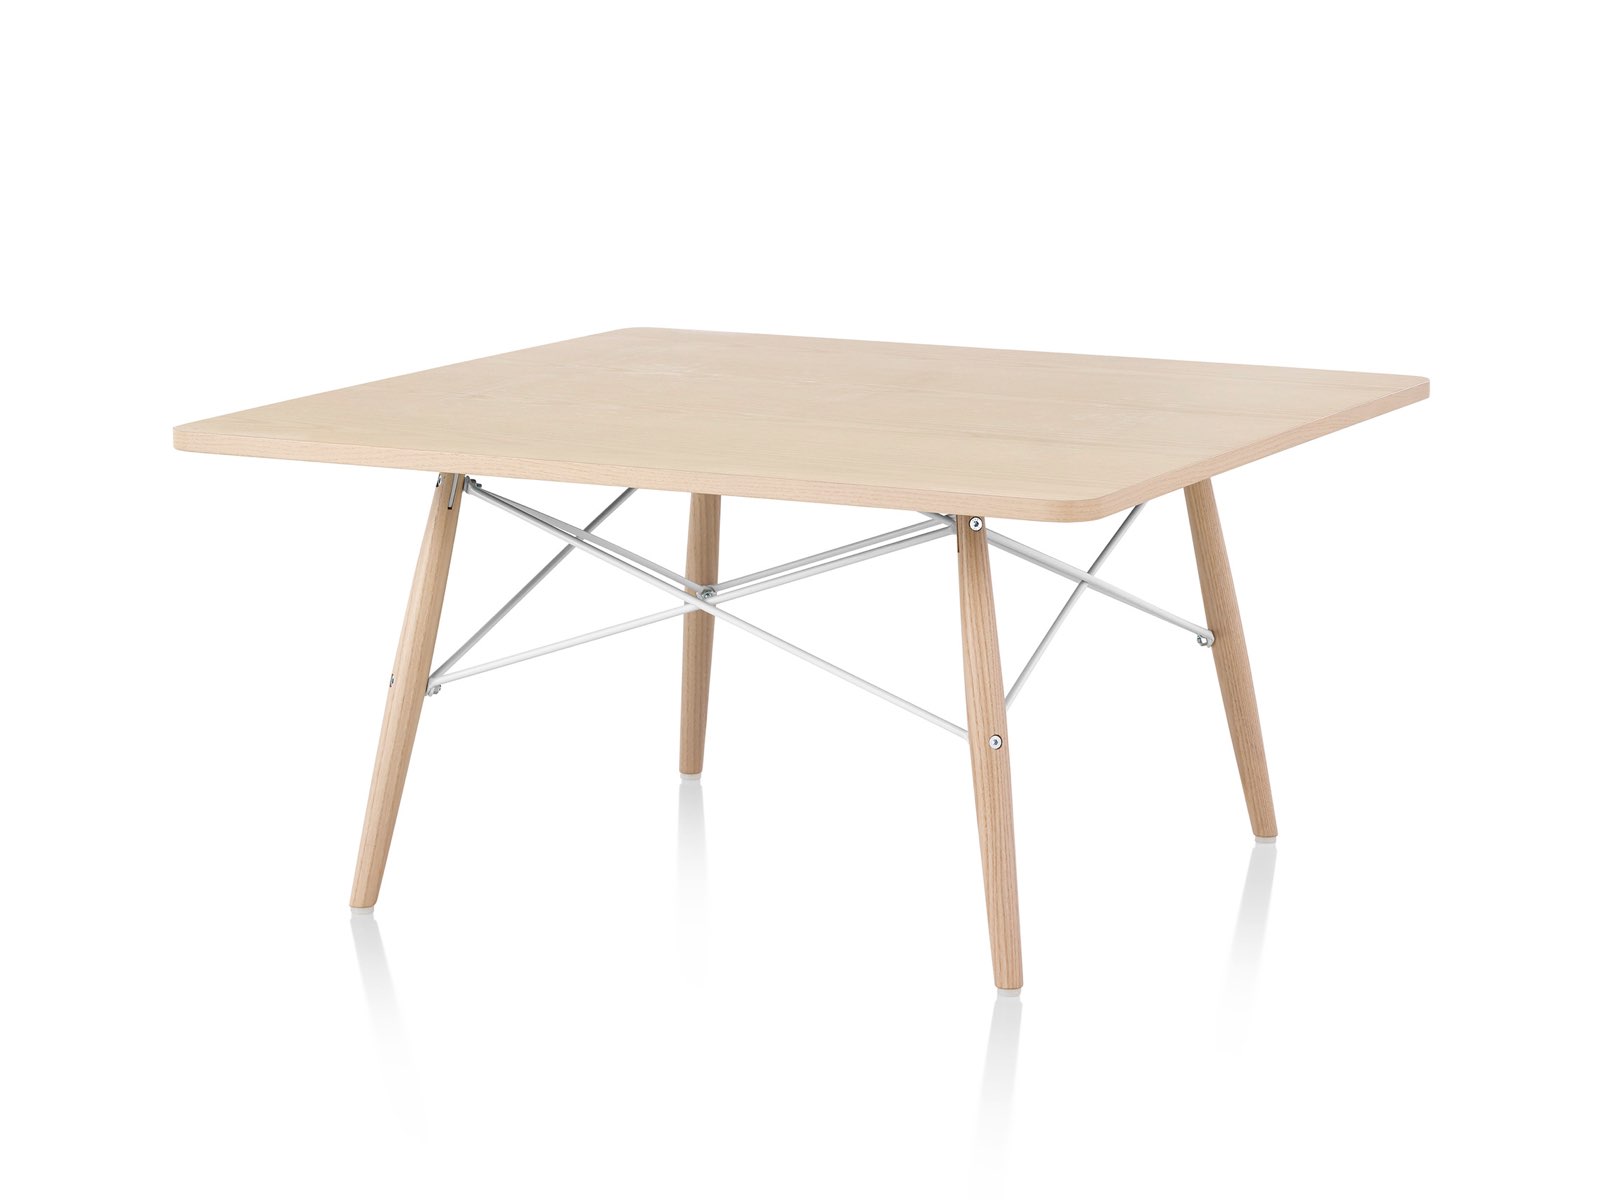 Una vista en ángulo de una mesa de centro Eames con patas de madera, travesaños metálicos y una tapa de madera clara.